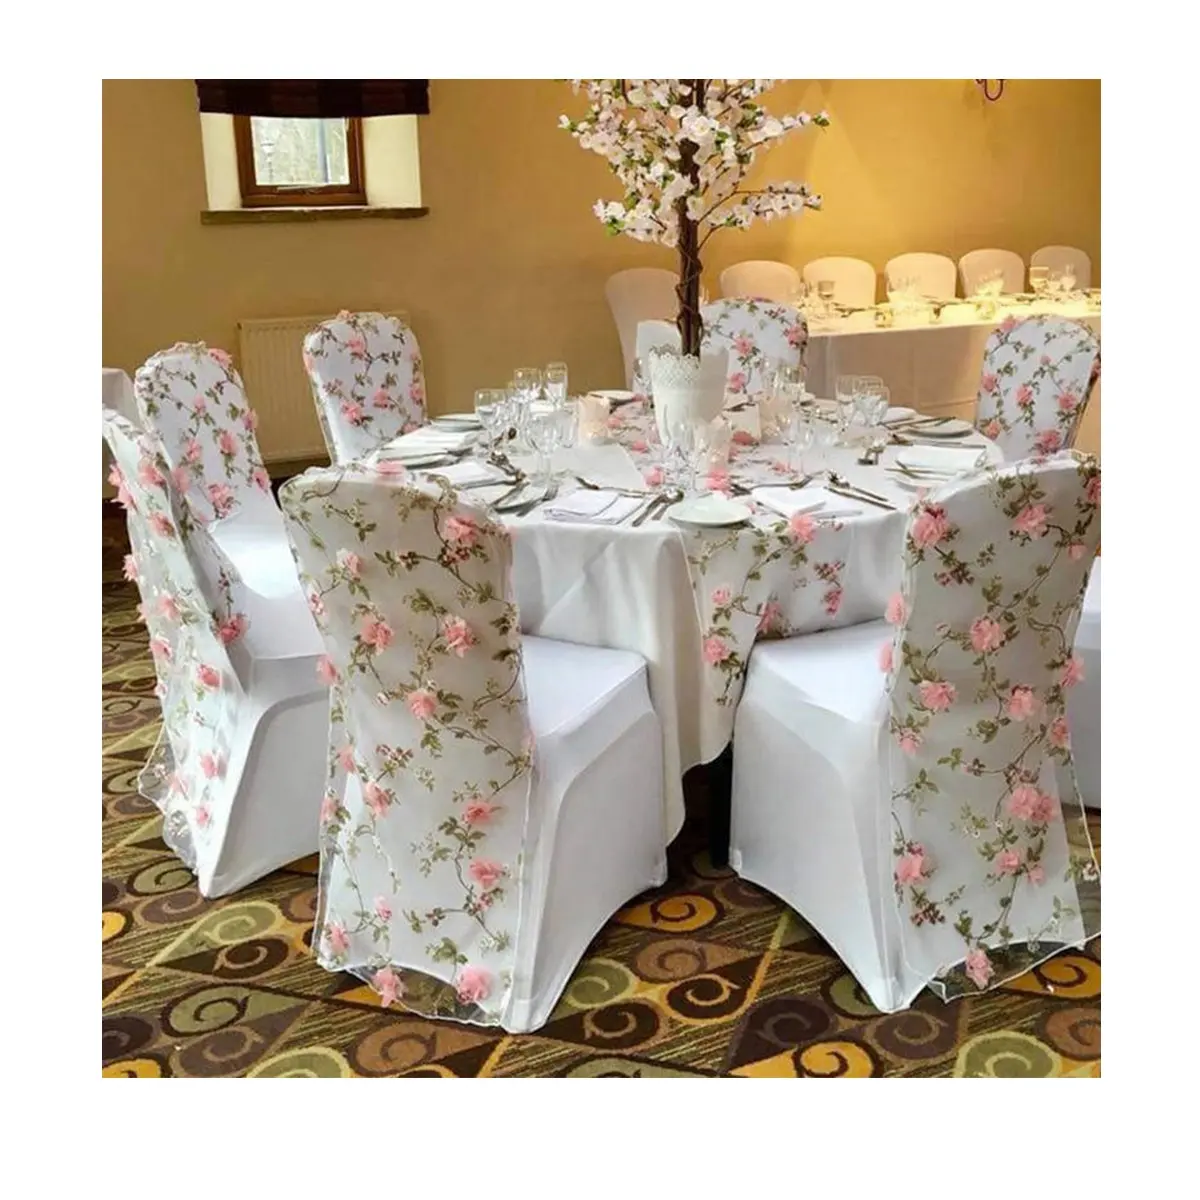 Belle telai all'ingrosso della sedia del fiore dell'organza del ricamo della rosa per la decorazione di natale del partito di pranzo dell'hotel di nozze